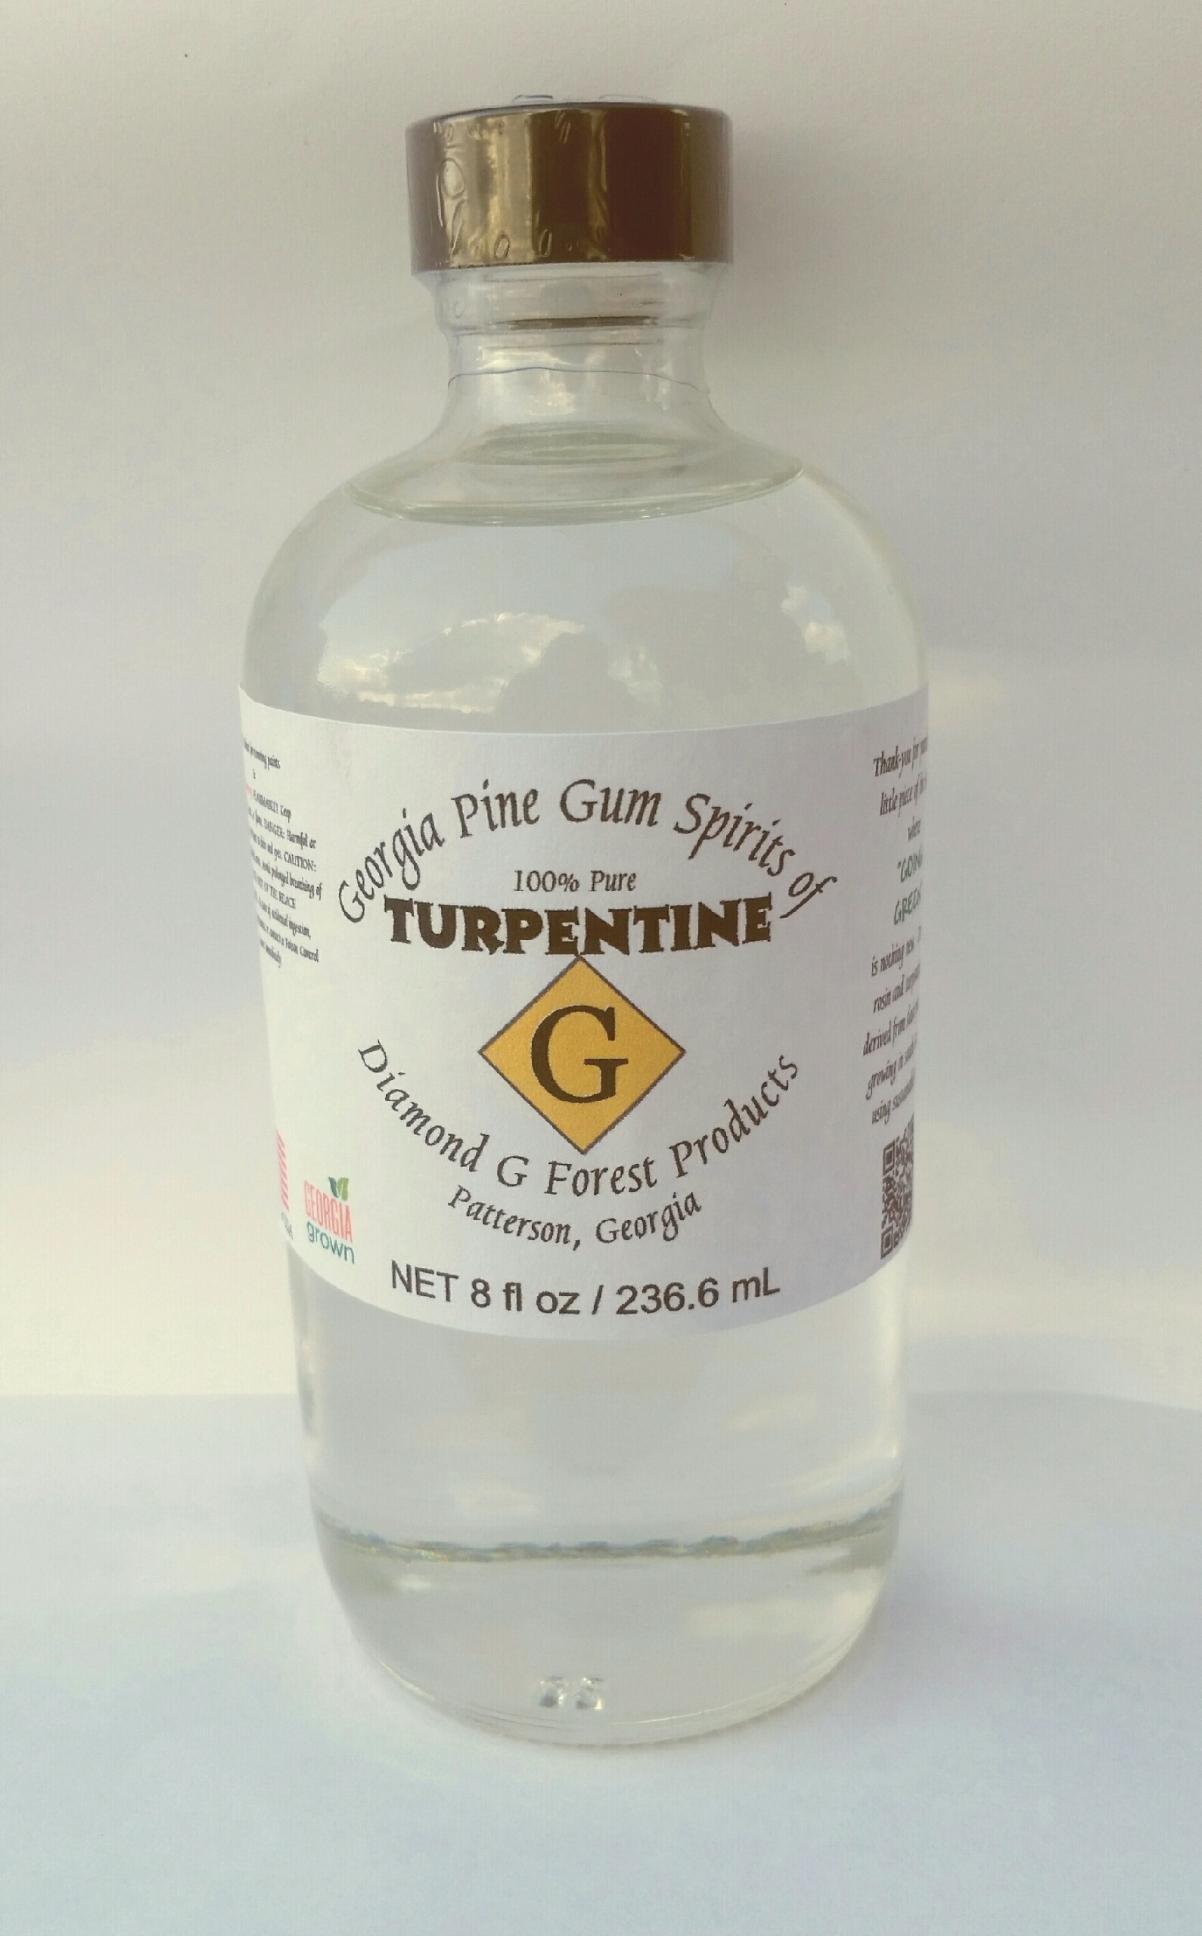 100% Pure Gum Spirits of Turpentine